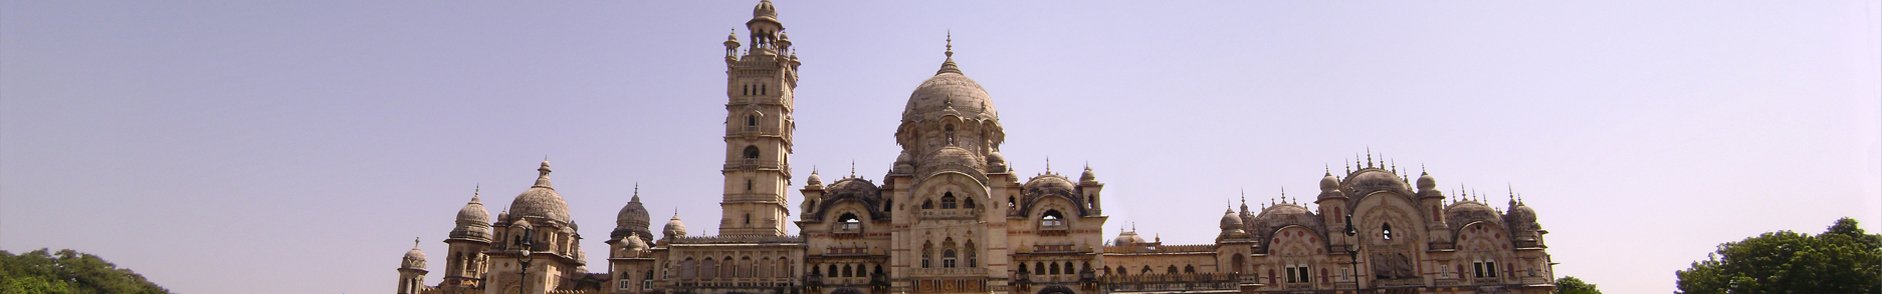 Tambekar Wada Vadodara, Gujarat